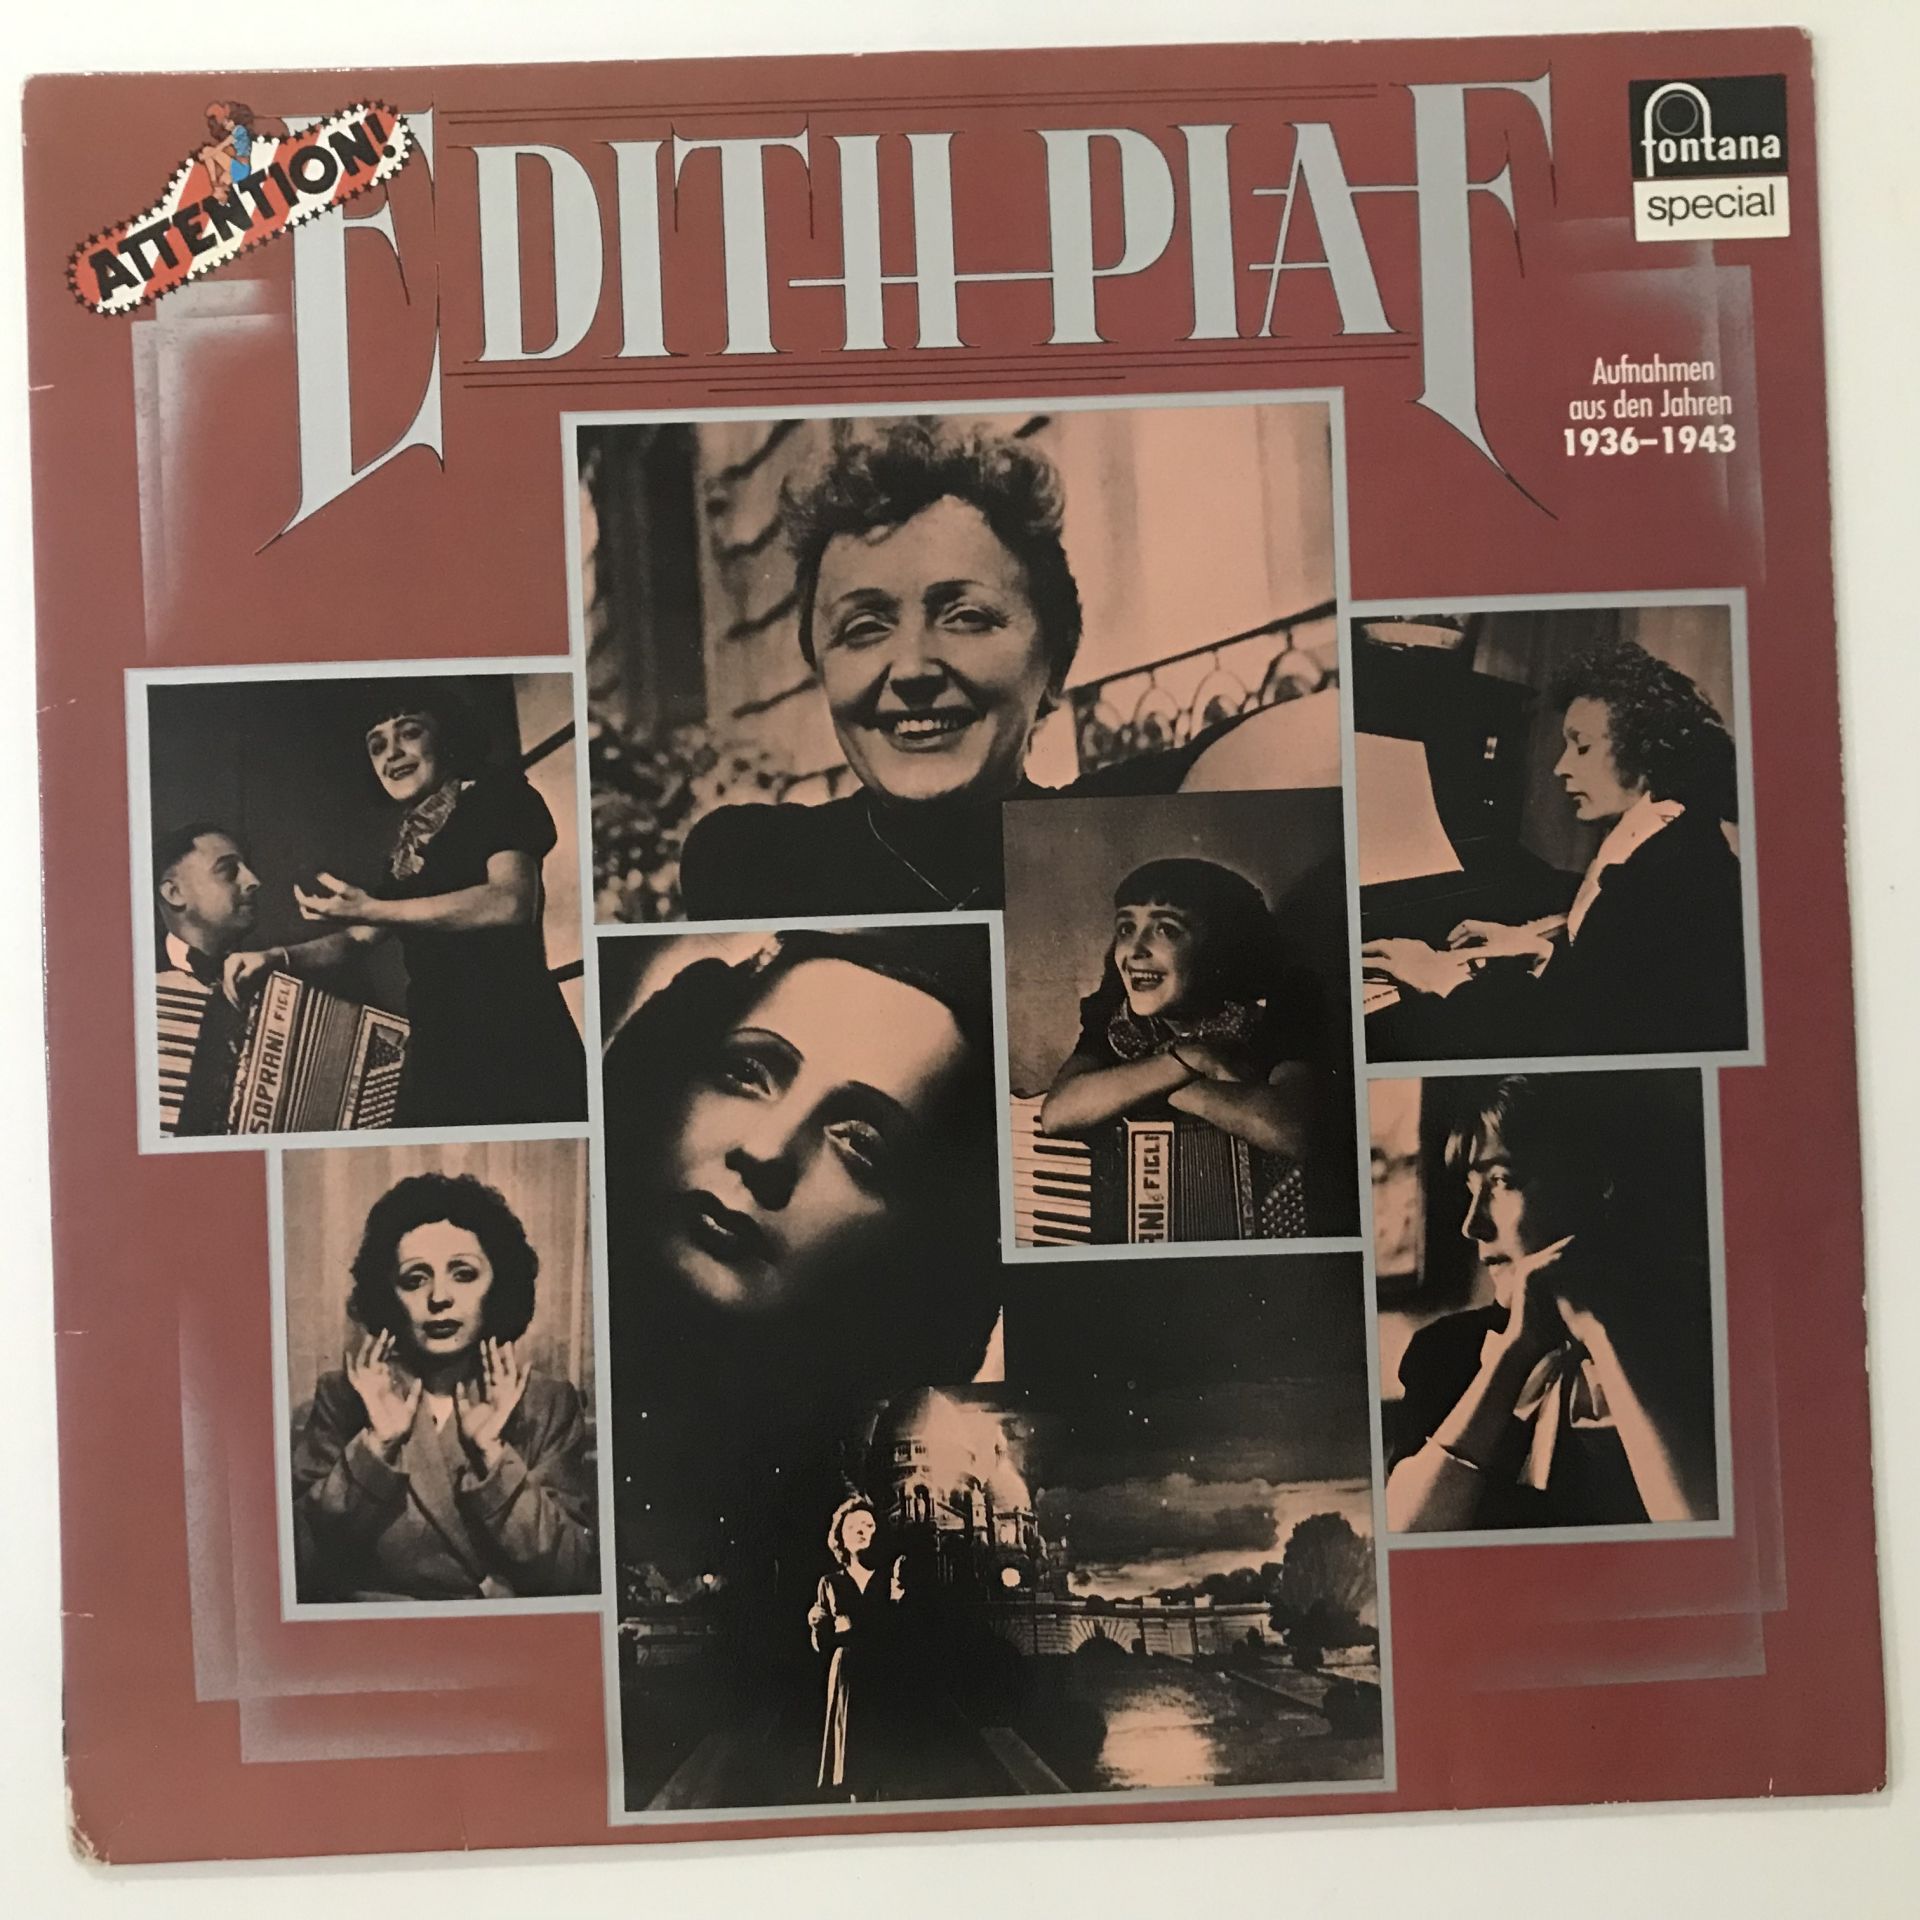 Edith Piaf – Attention! Edith Piaf!